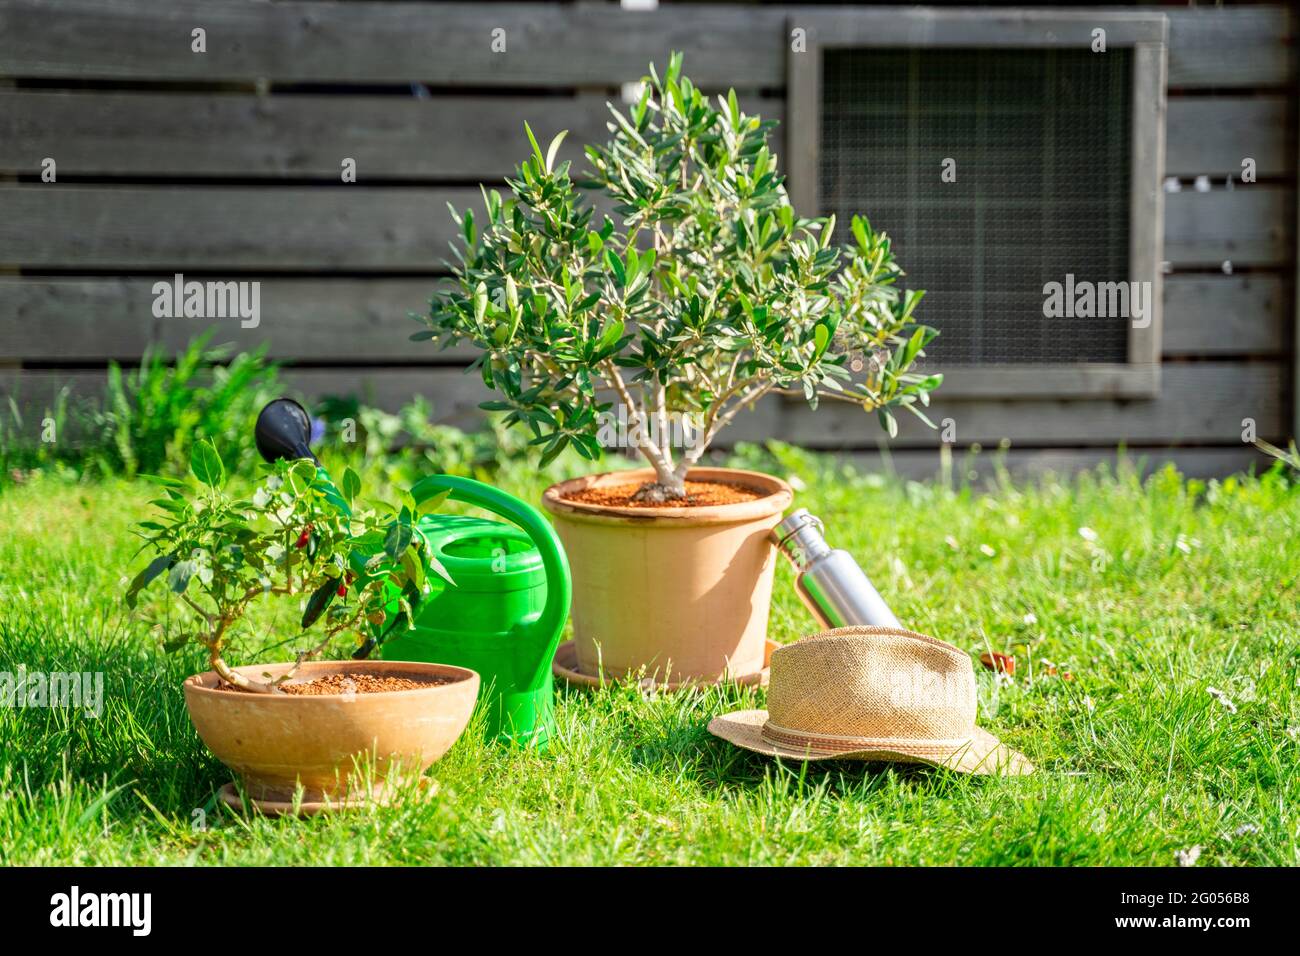 Arrosoir en plastique, plante à la maison en pot, chapeau de paille,  bouteille d'eau sur pelouse Photo Stock - Alamy